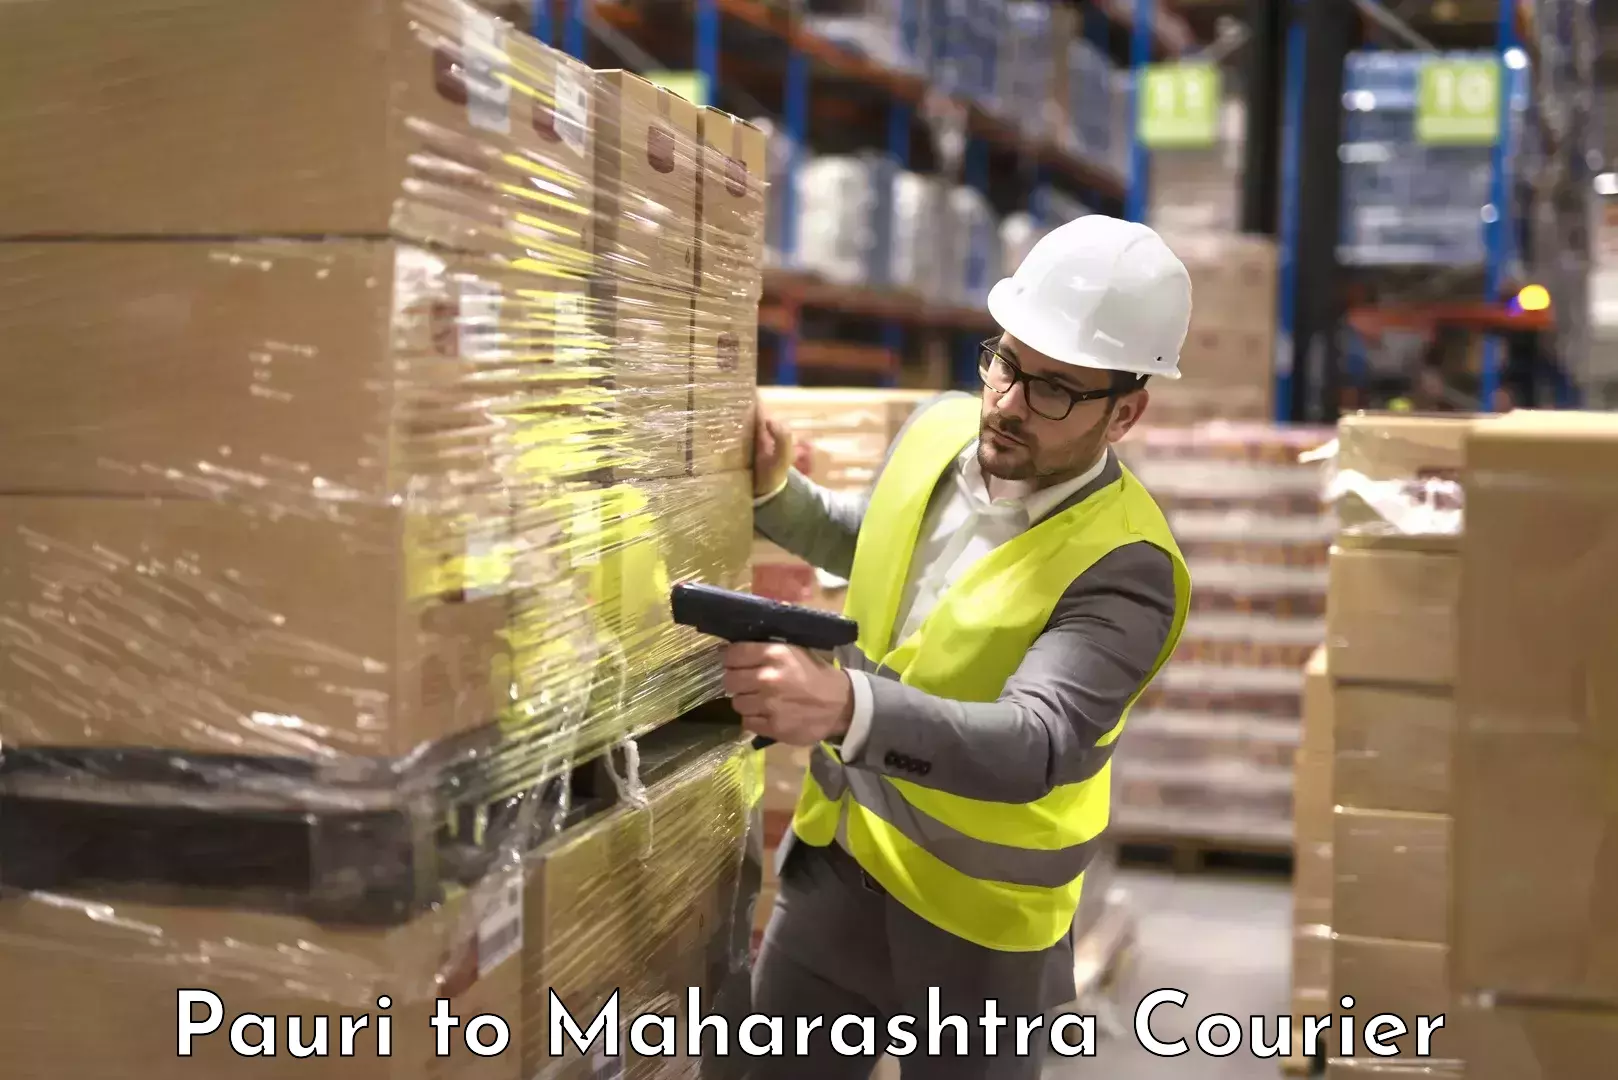 Baggage shipping experience Pauri to Maharashtra